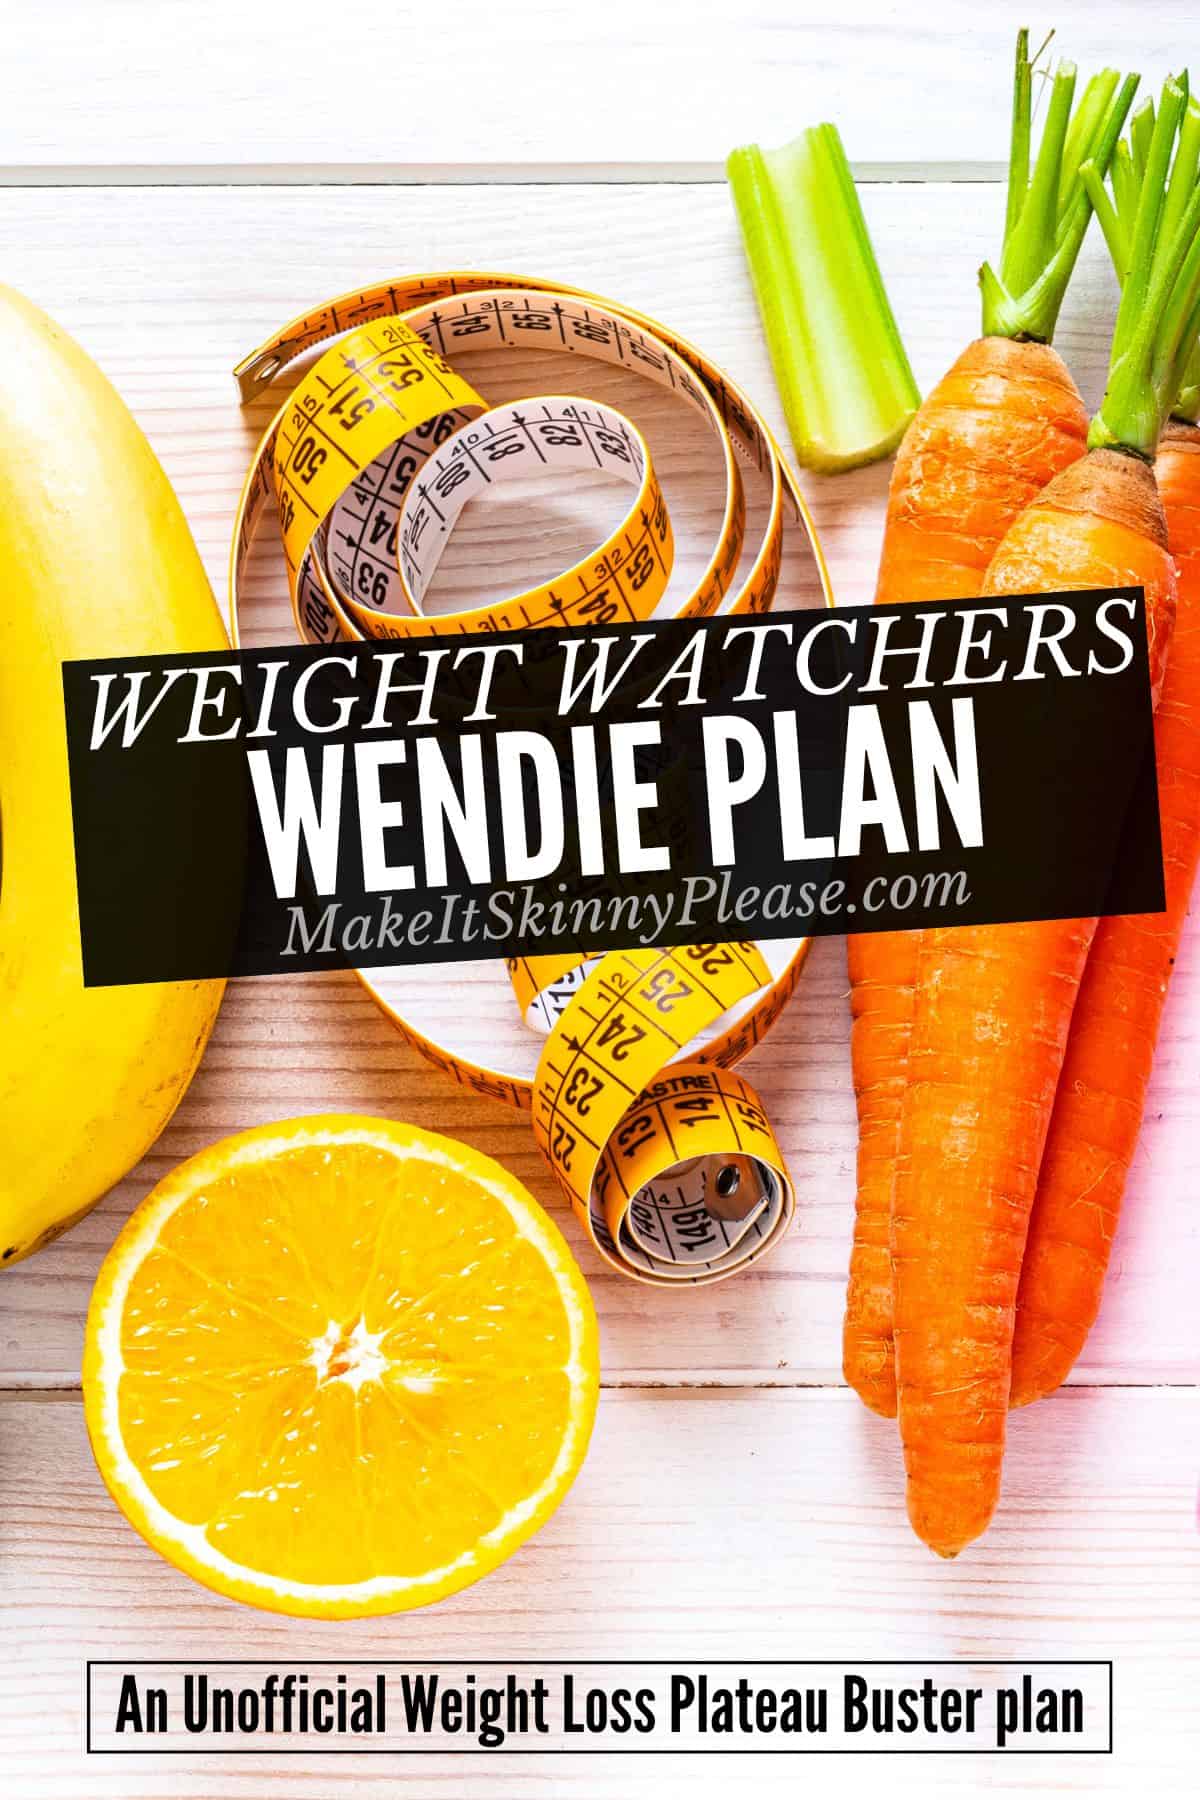 weight watchers wendie plan graphic.